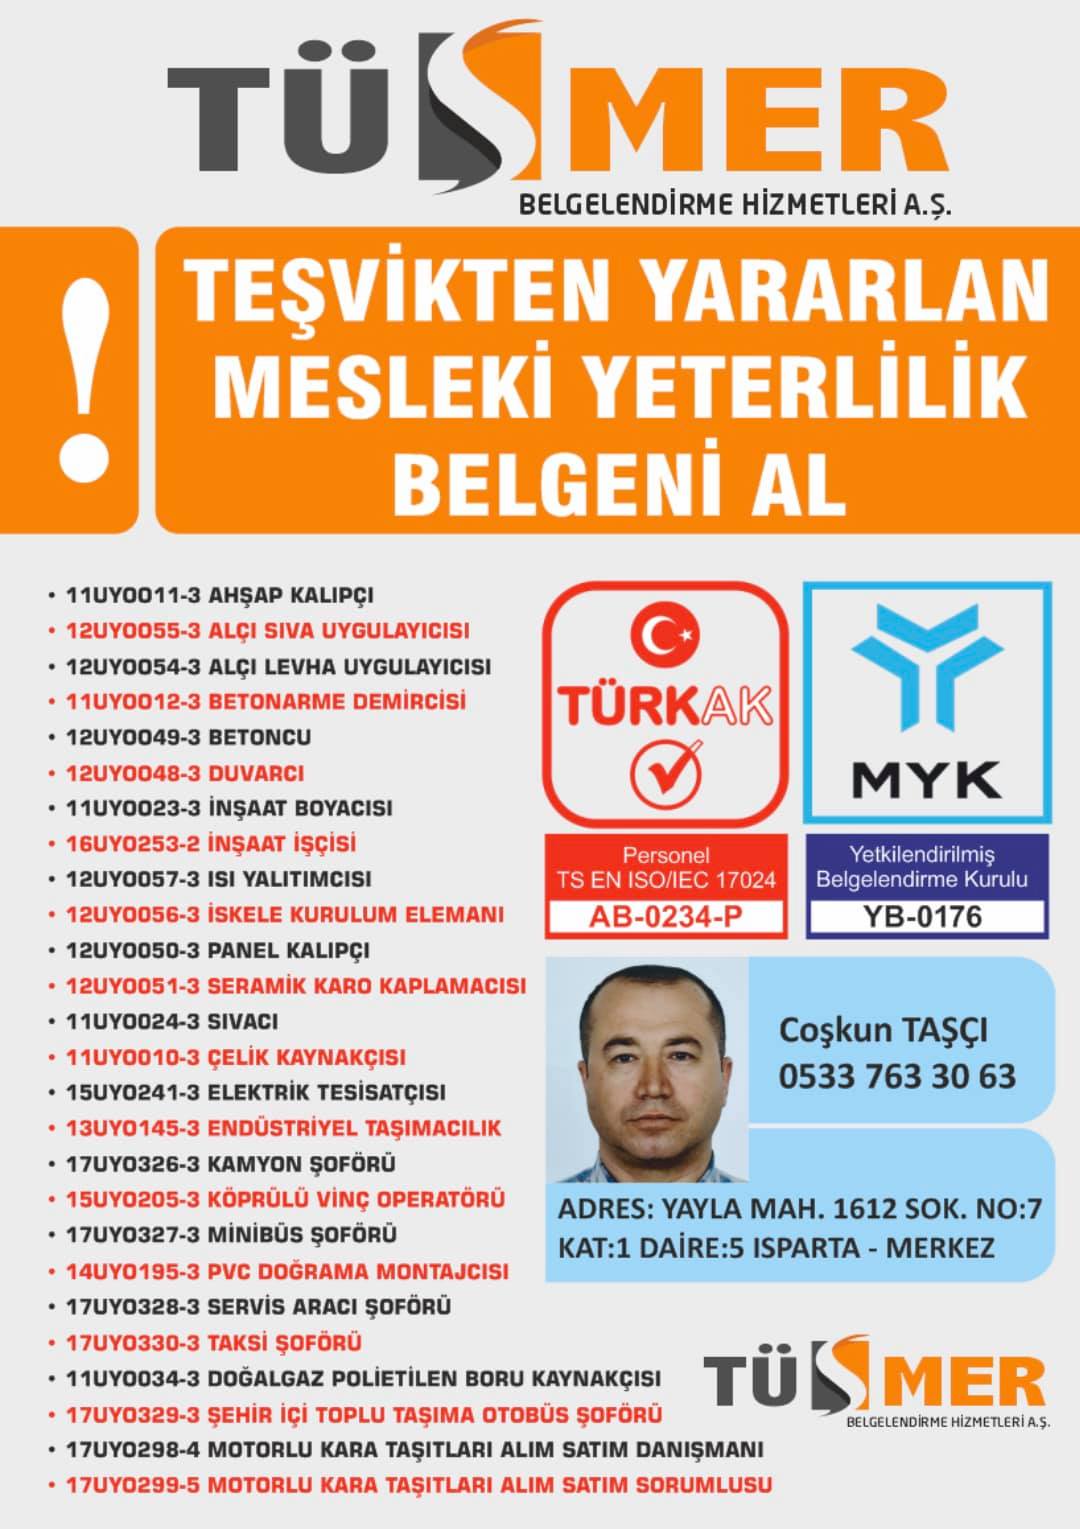 MYK MESLEKİ YETERLİLİK BELGESİ Konaklar Beşiktaş İstanbul